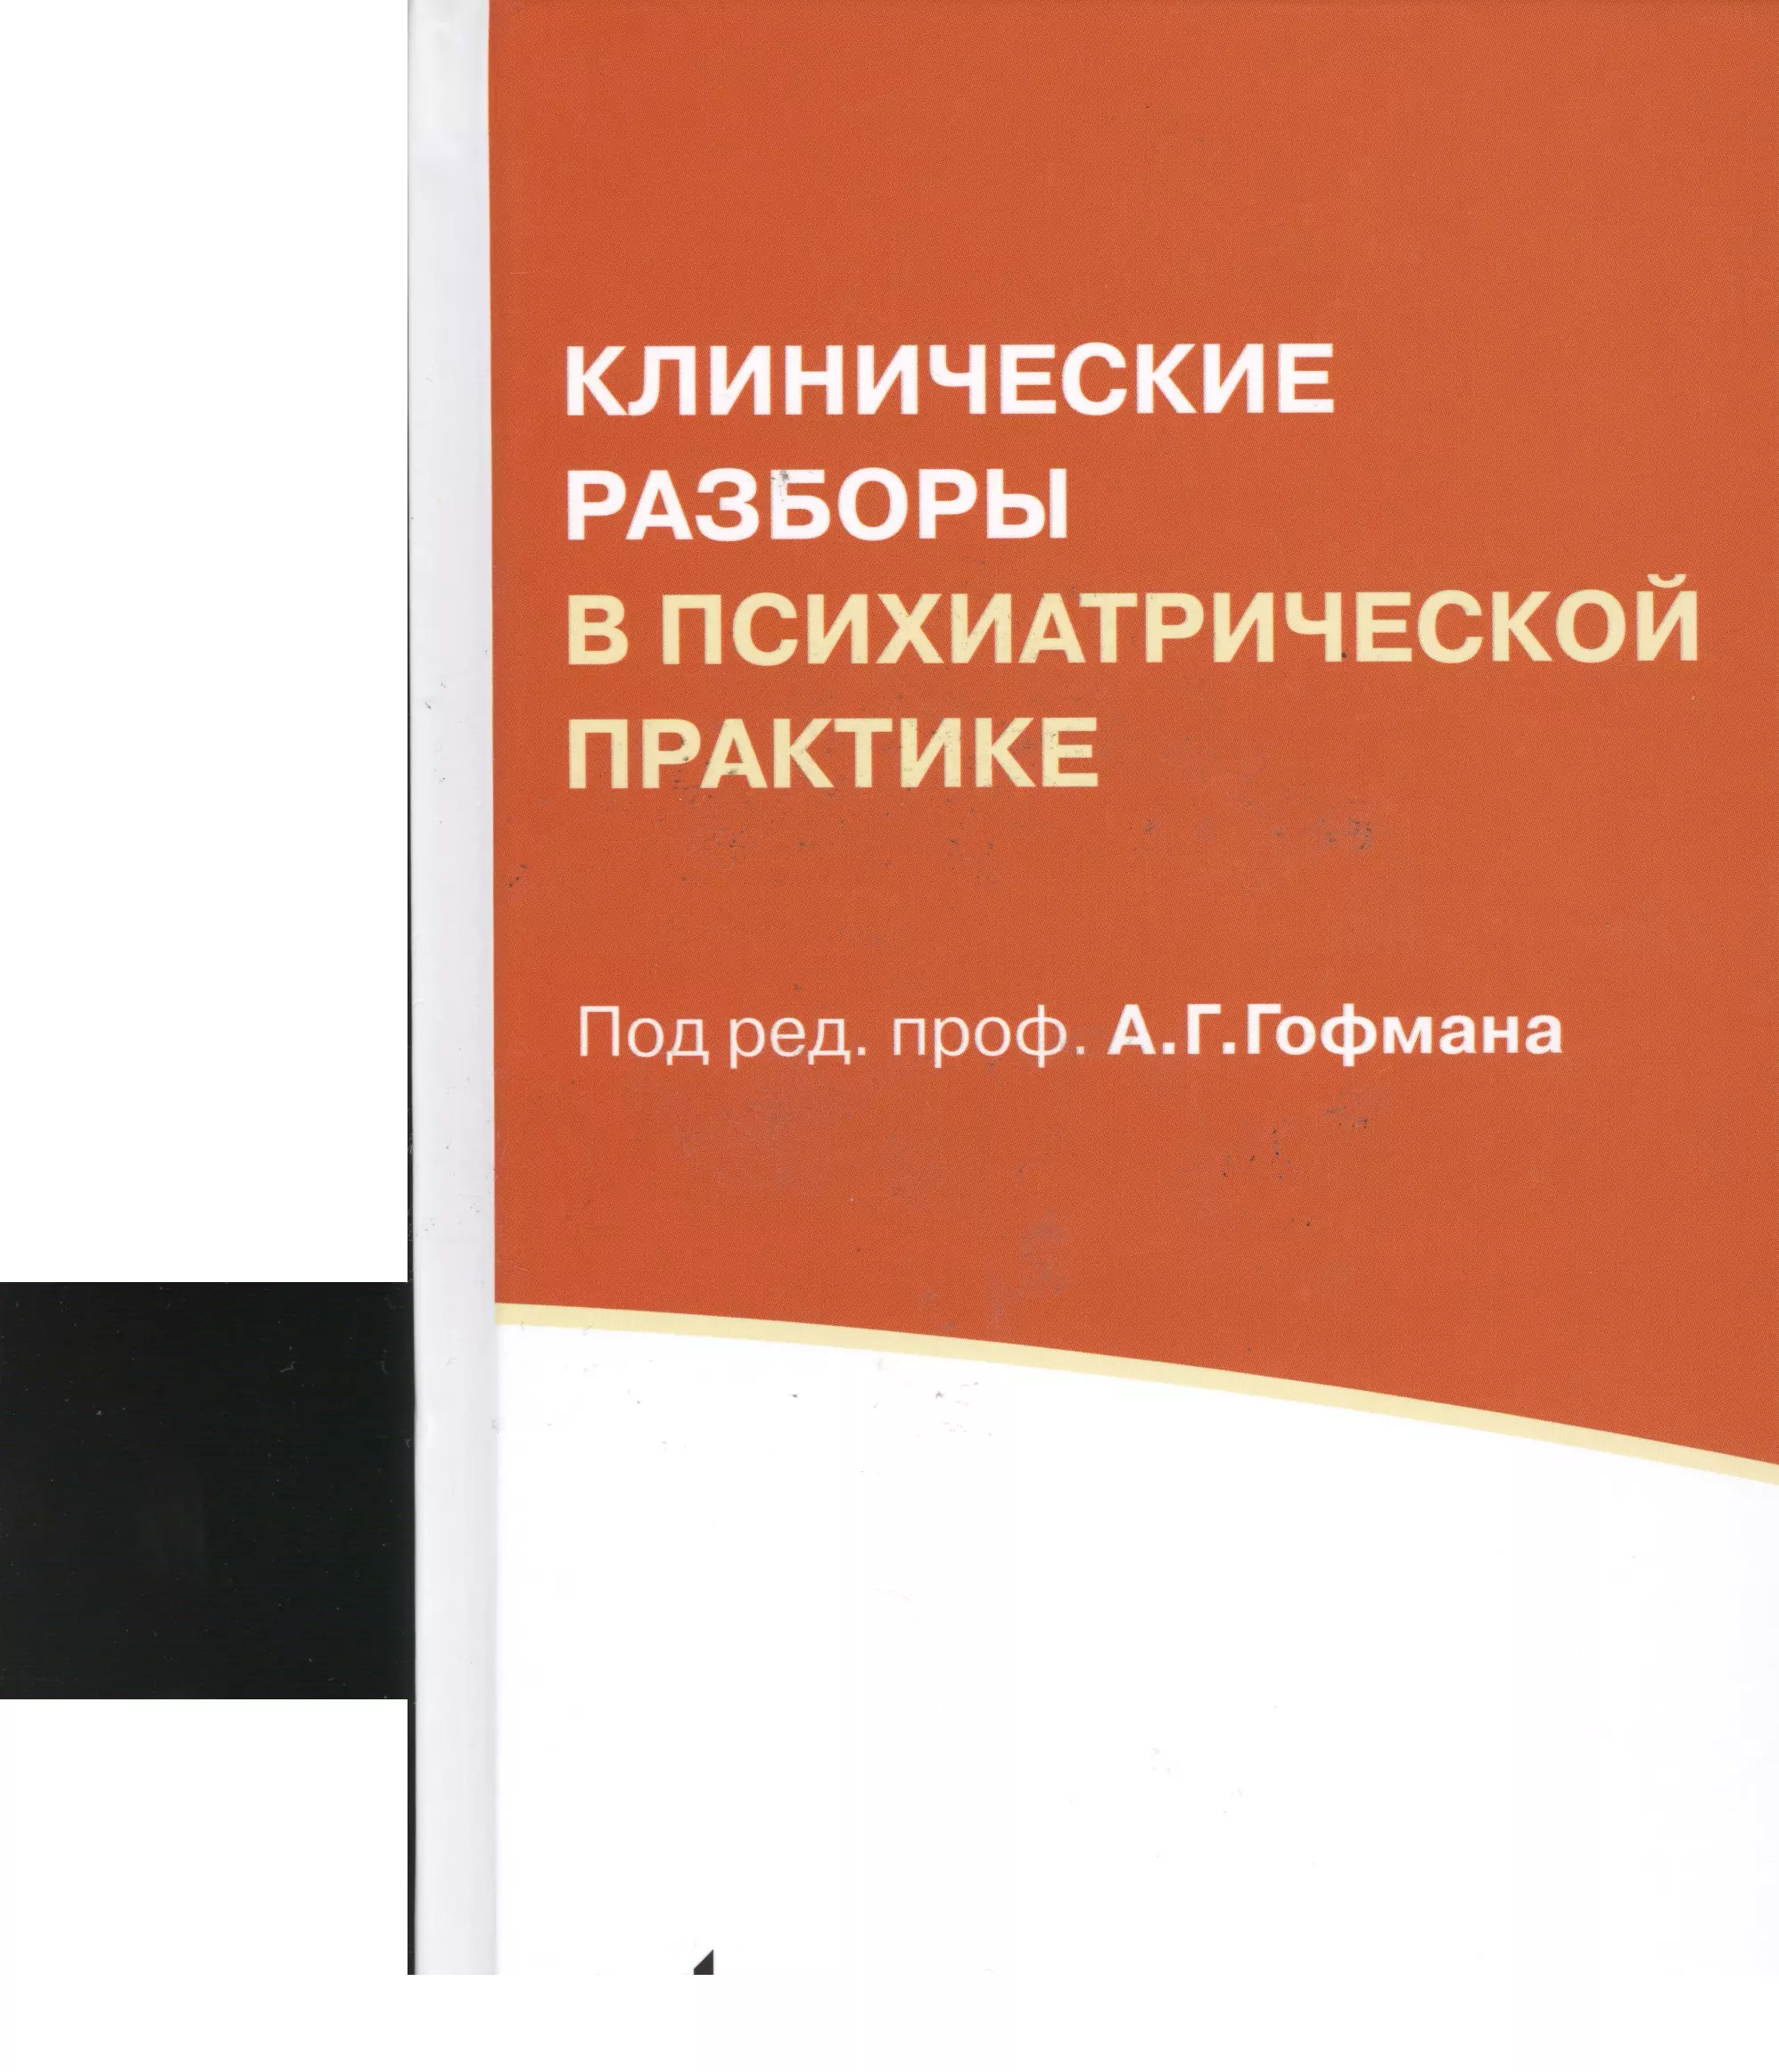 Гофман Александр Генрихович - Клинические разборы в психиатрической практике. 5-е издание